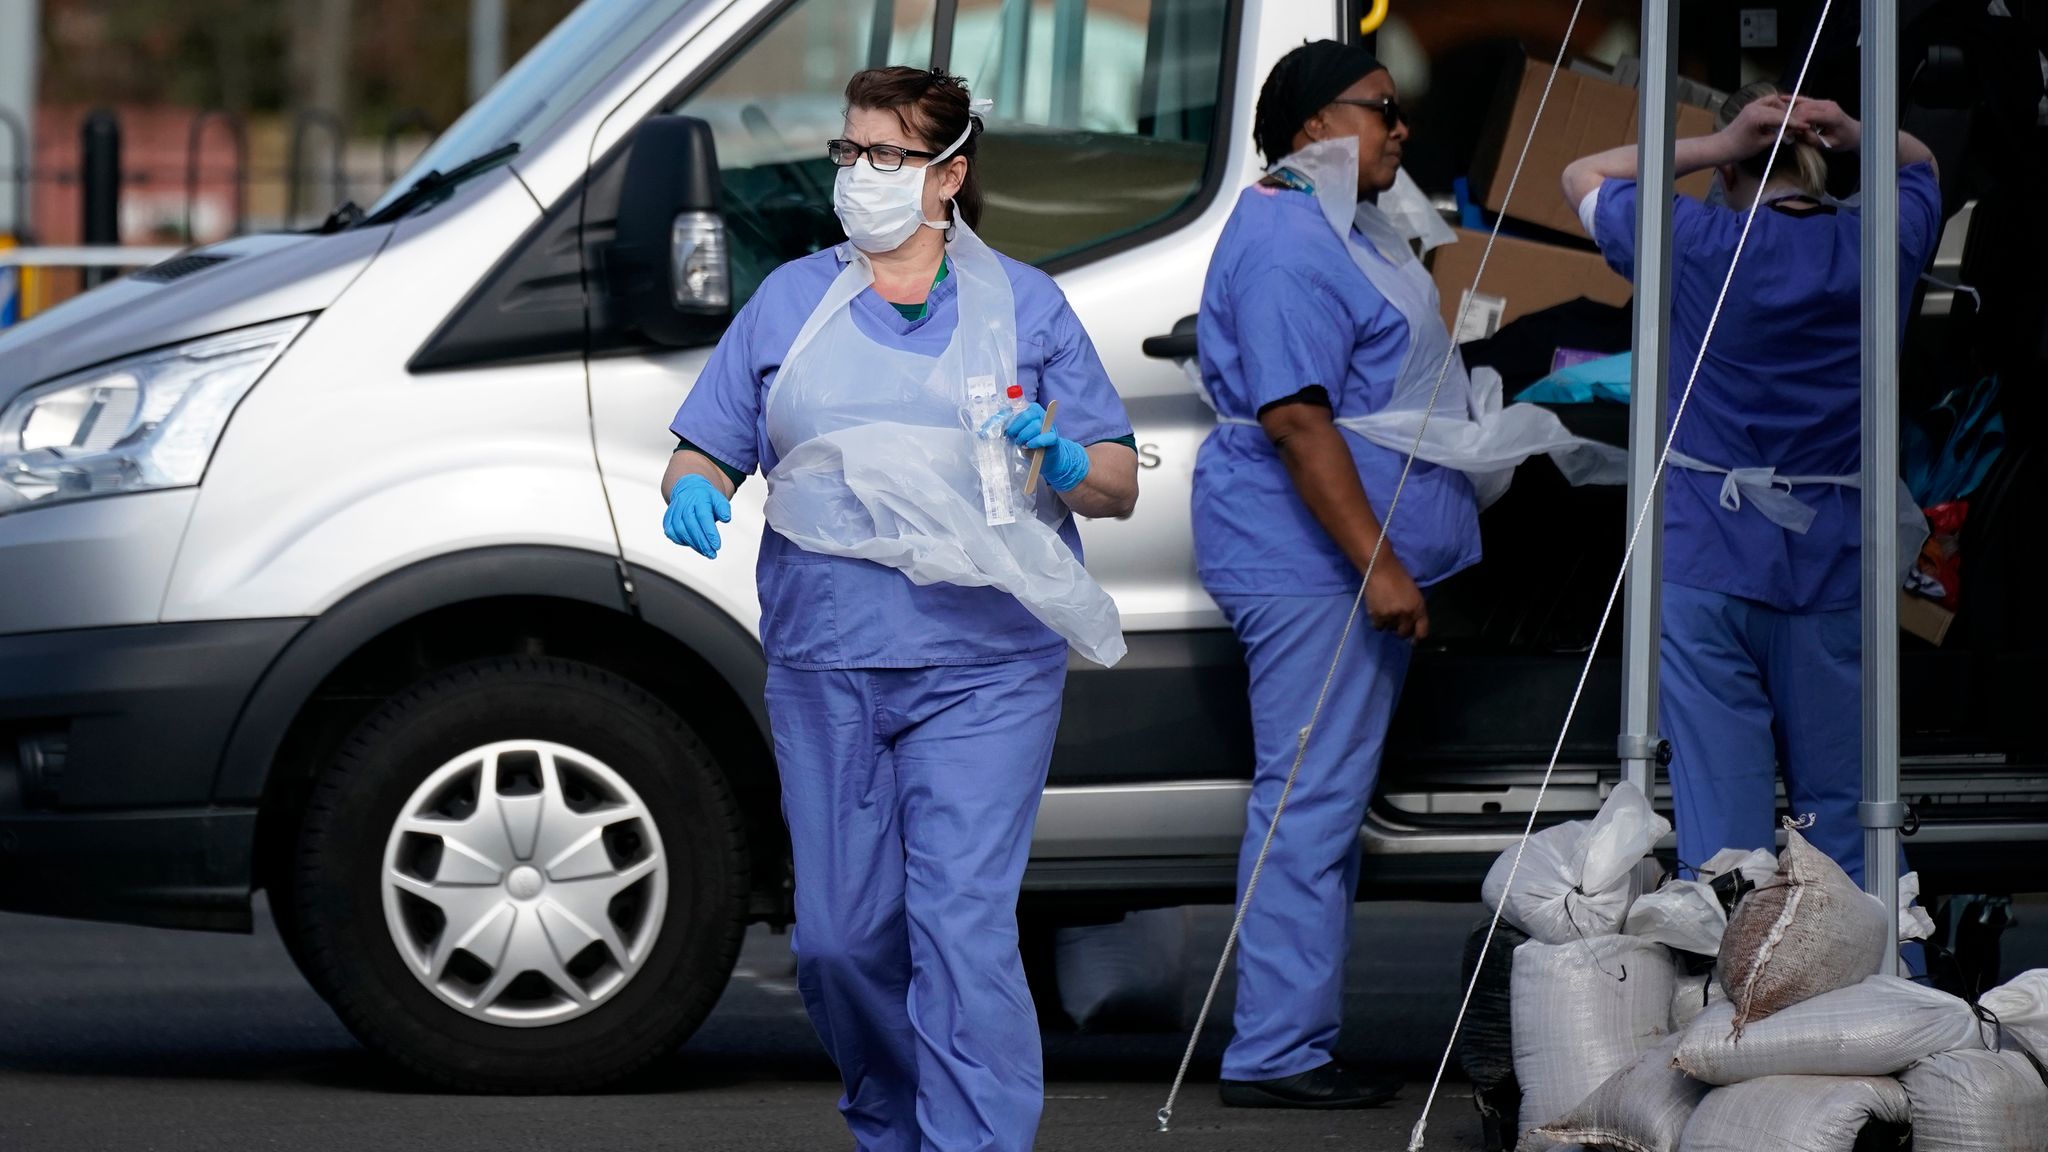 Βρετανία: Διατηρούν υπό έλεγχο την πανδημία χωρίς να πάρουν μέτρα! – 53 θύματα & 1542 κρούσματα σε 67 εκατ. πληθυσμο